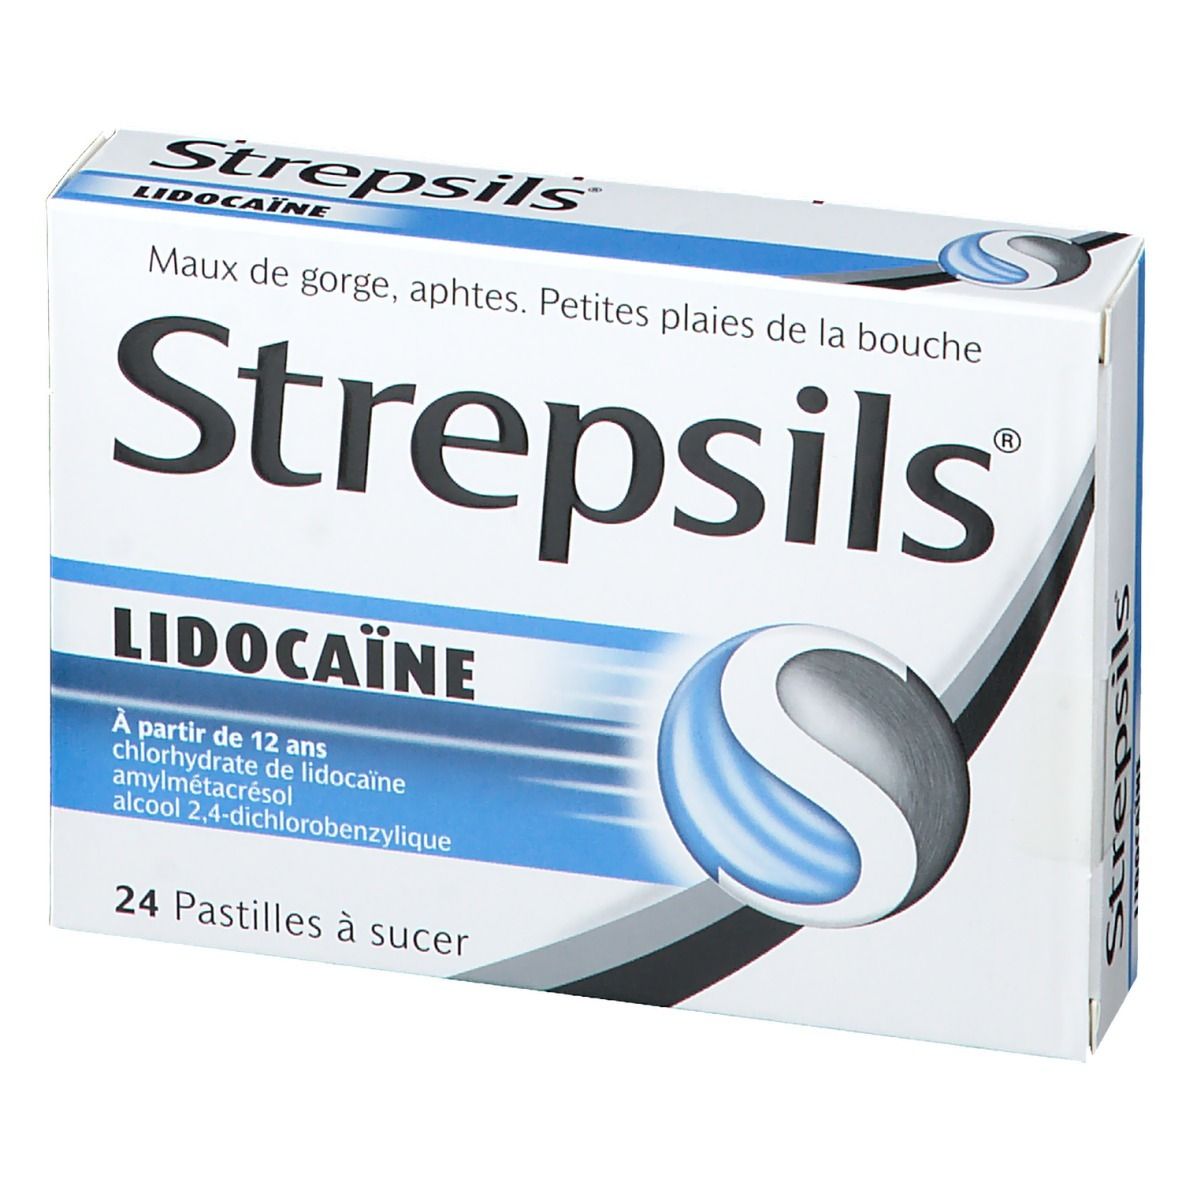 Strepsils Lidocaïne - À partir de 12 ans